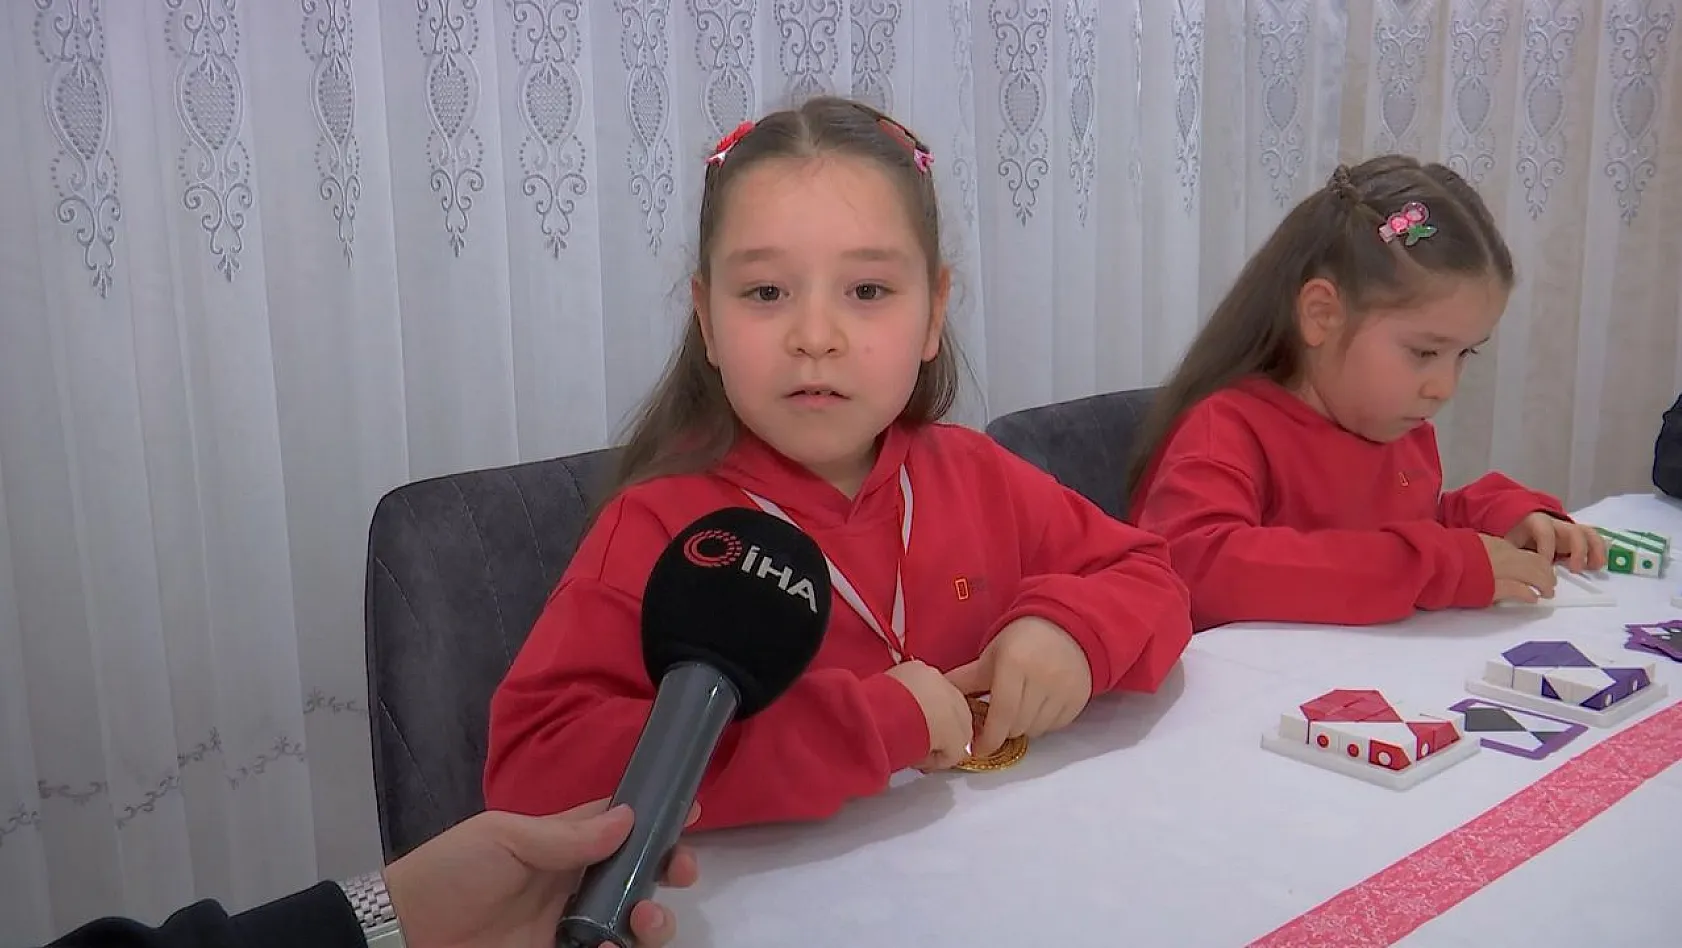 8 yaşındaki şampiyon ikizler matematikte dünyayı dize getirdi